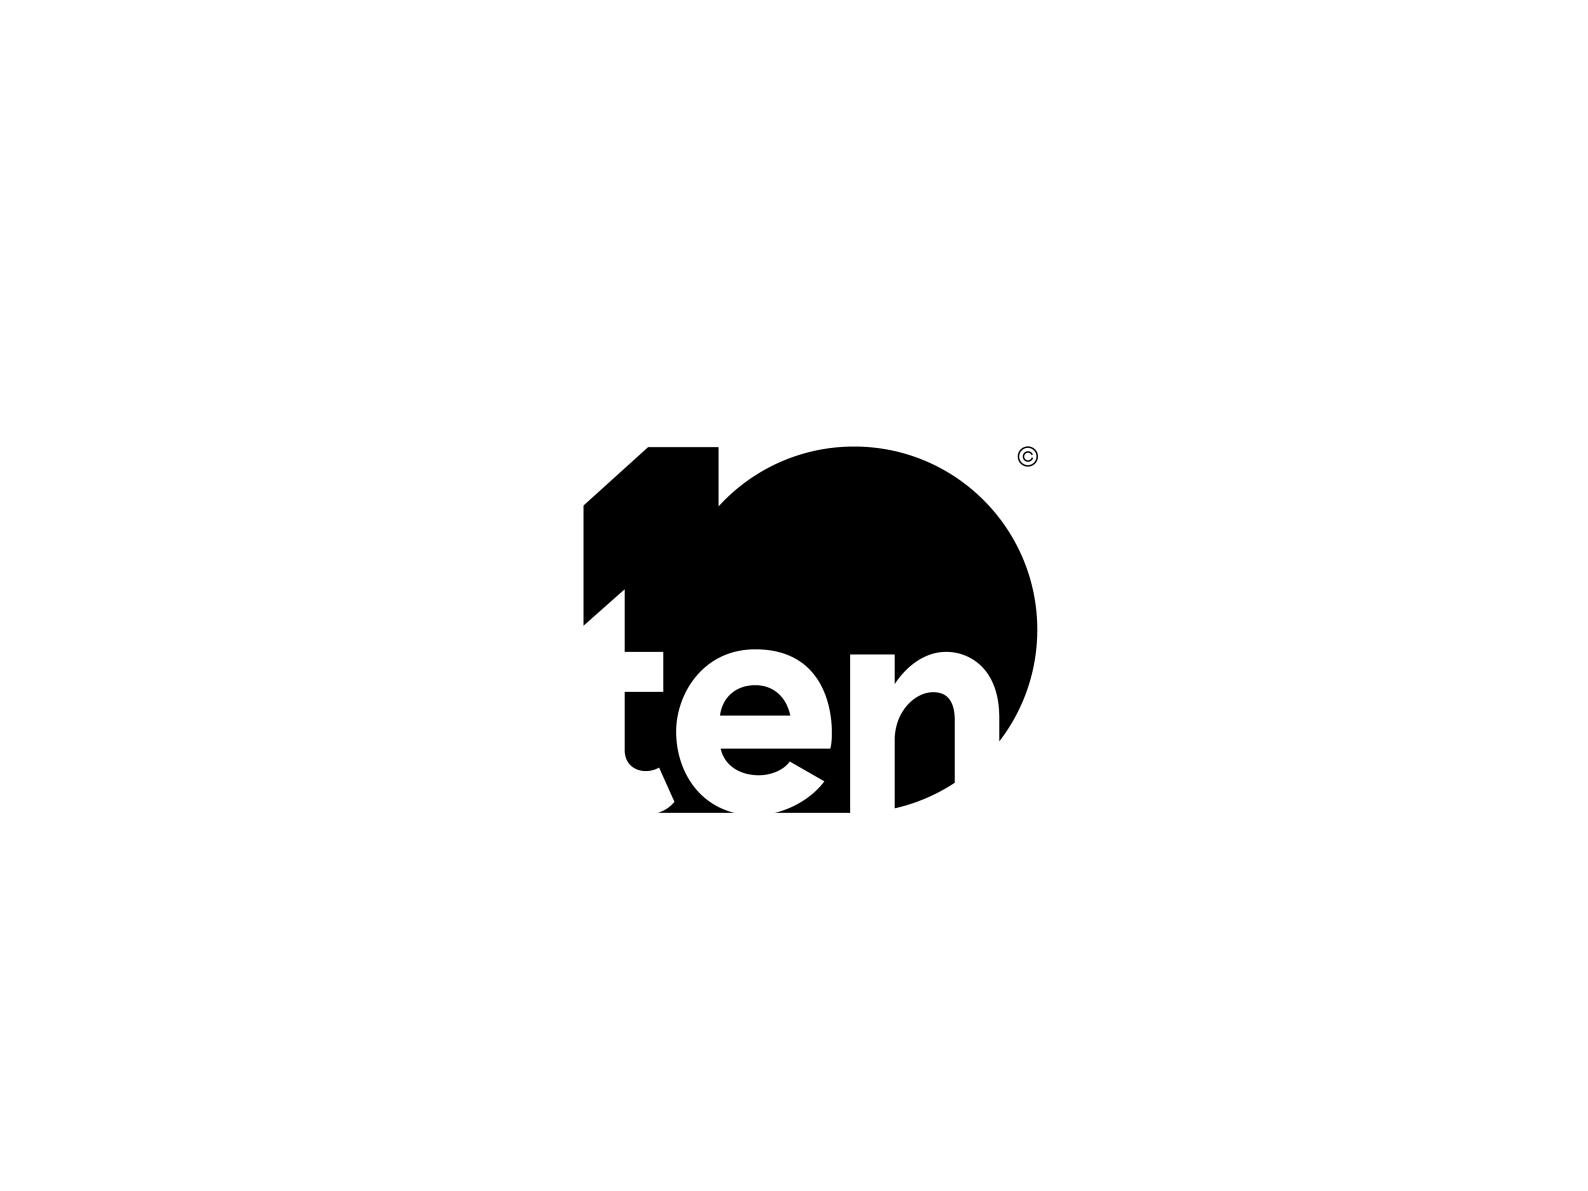 Ten to ten / TV channel by Mikhail Ryabenko on Dribbble